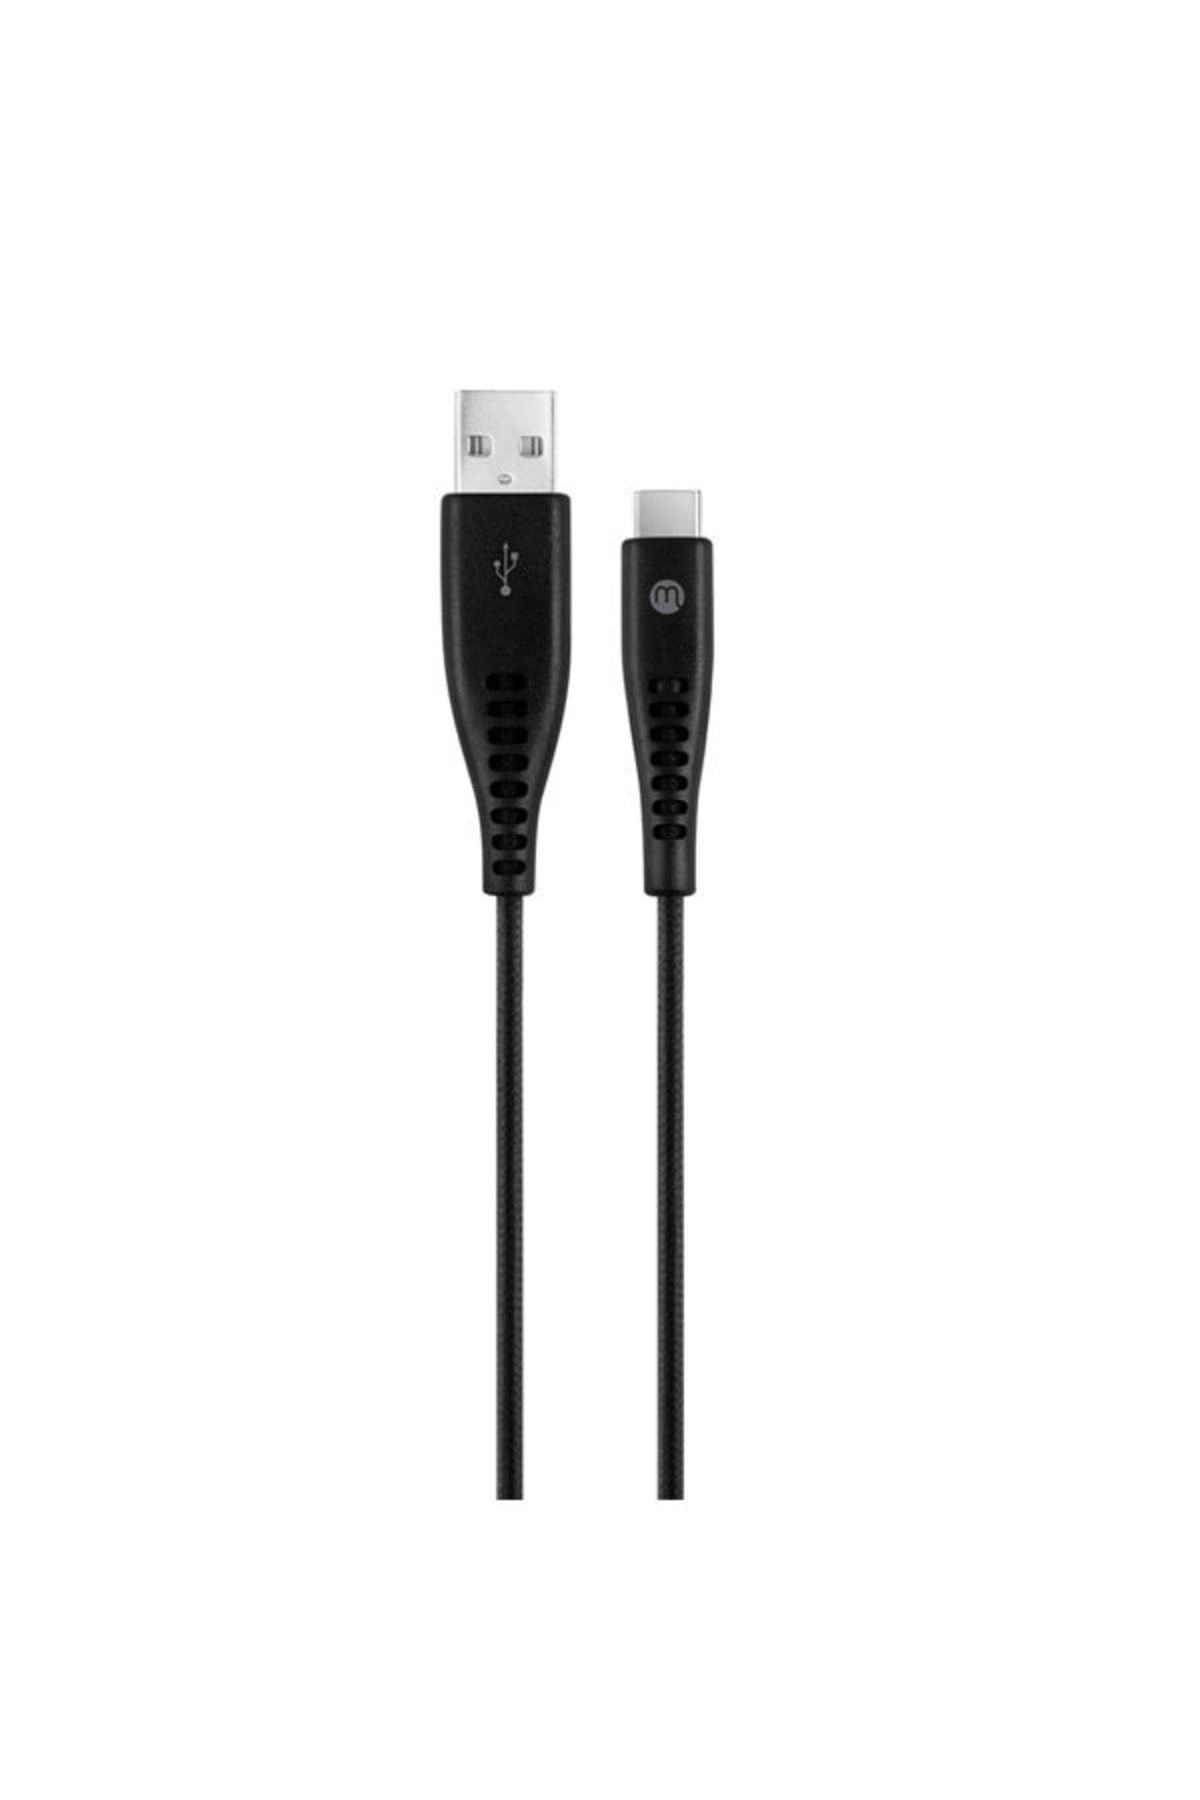 Mojue Ekstra Dayanıklı ve Uzun 300cm USB-A-USB-C 2A 480Mbps Veri Transfer Hızlı Şarj Kablosu